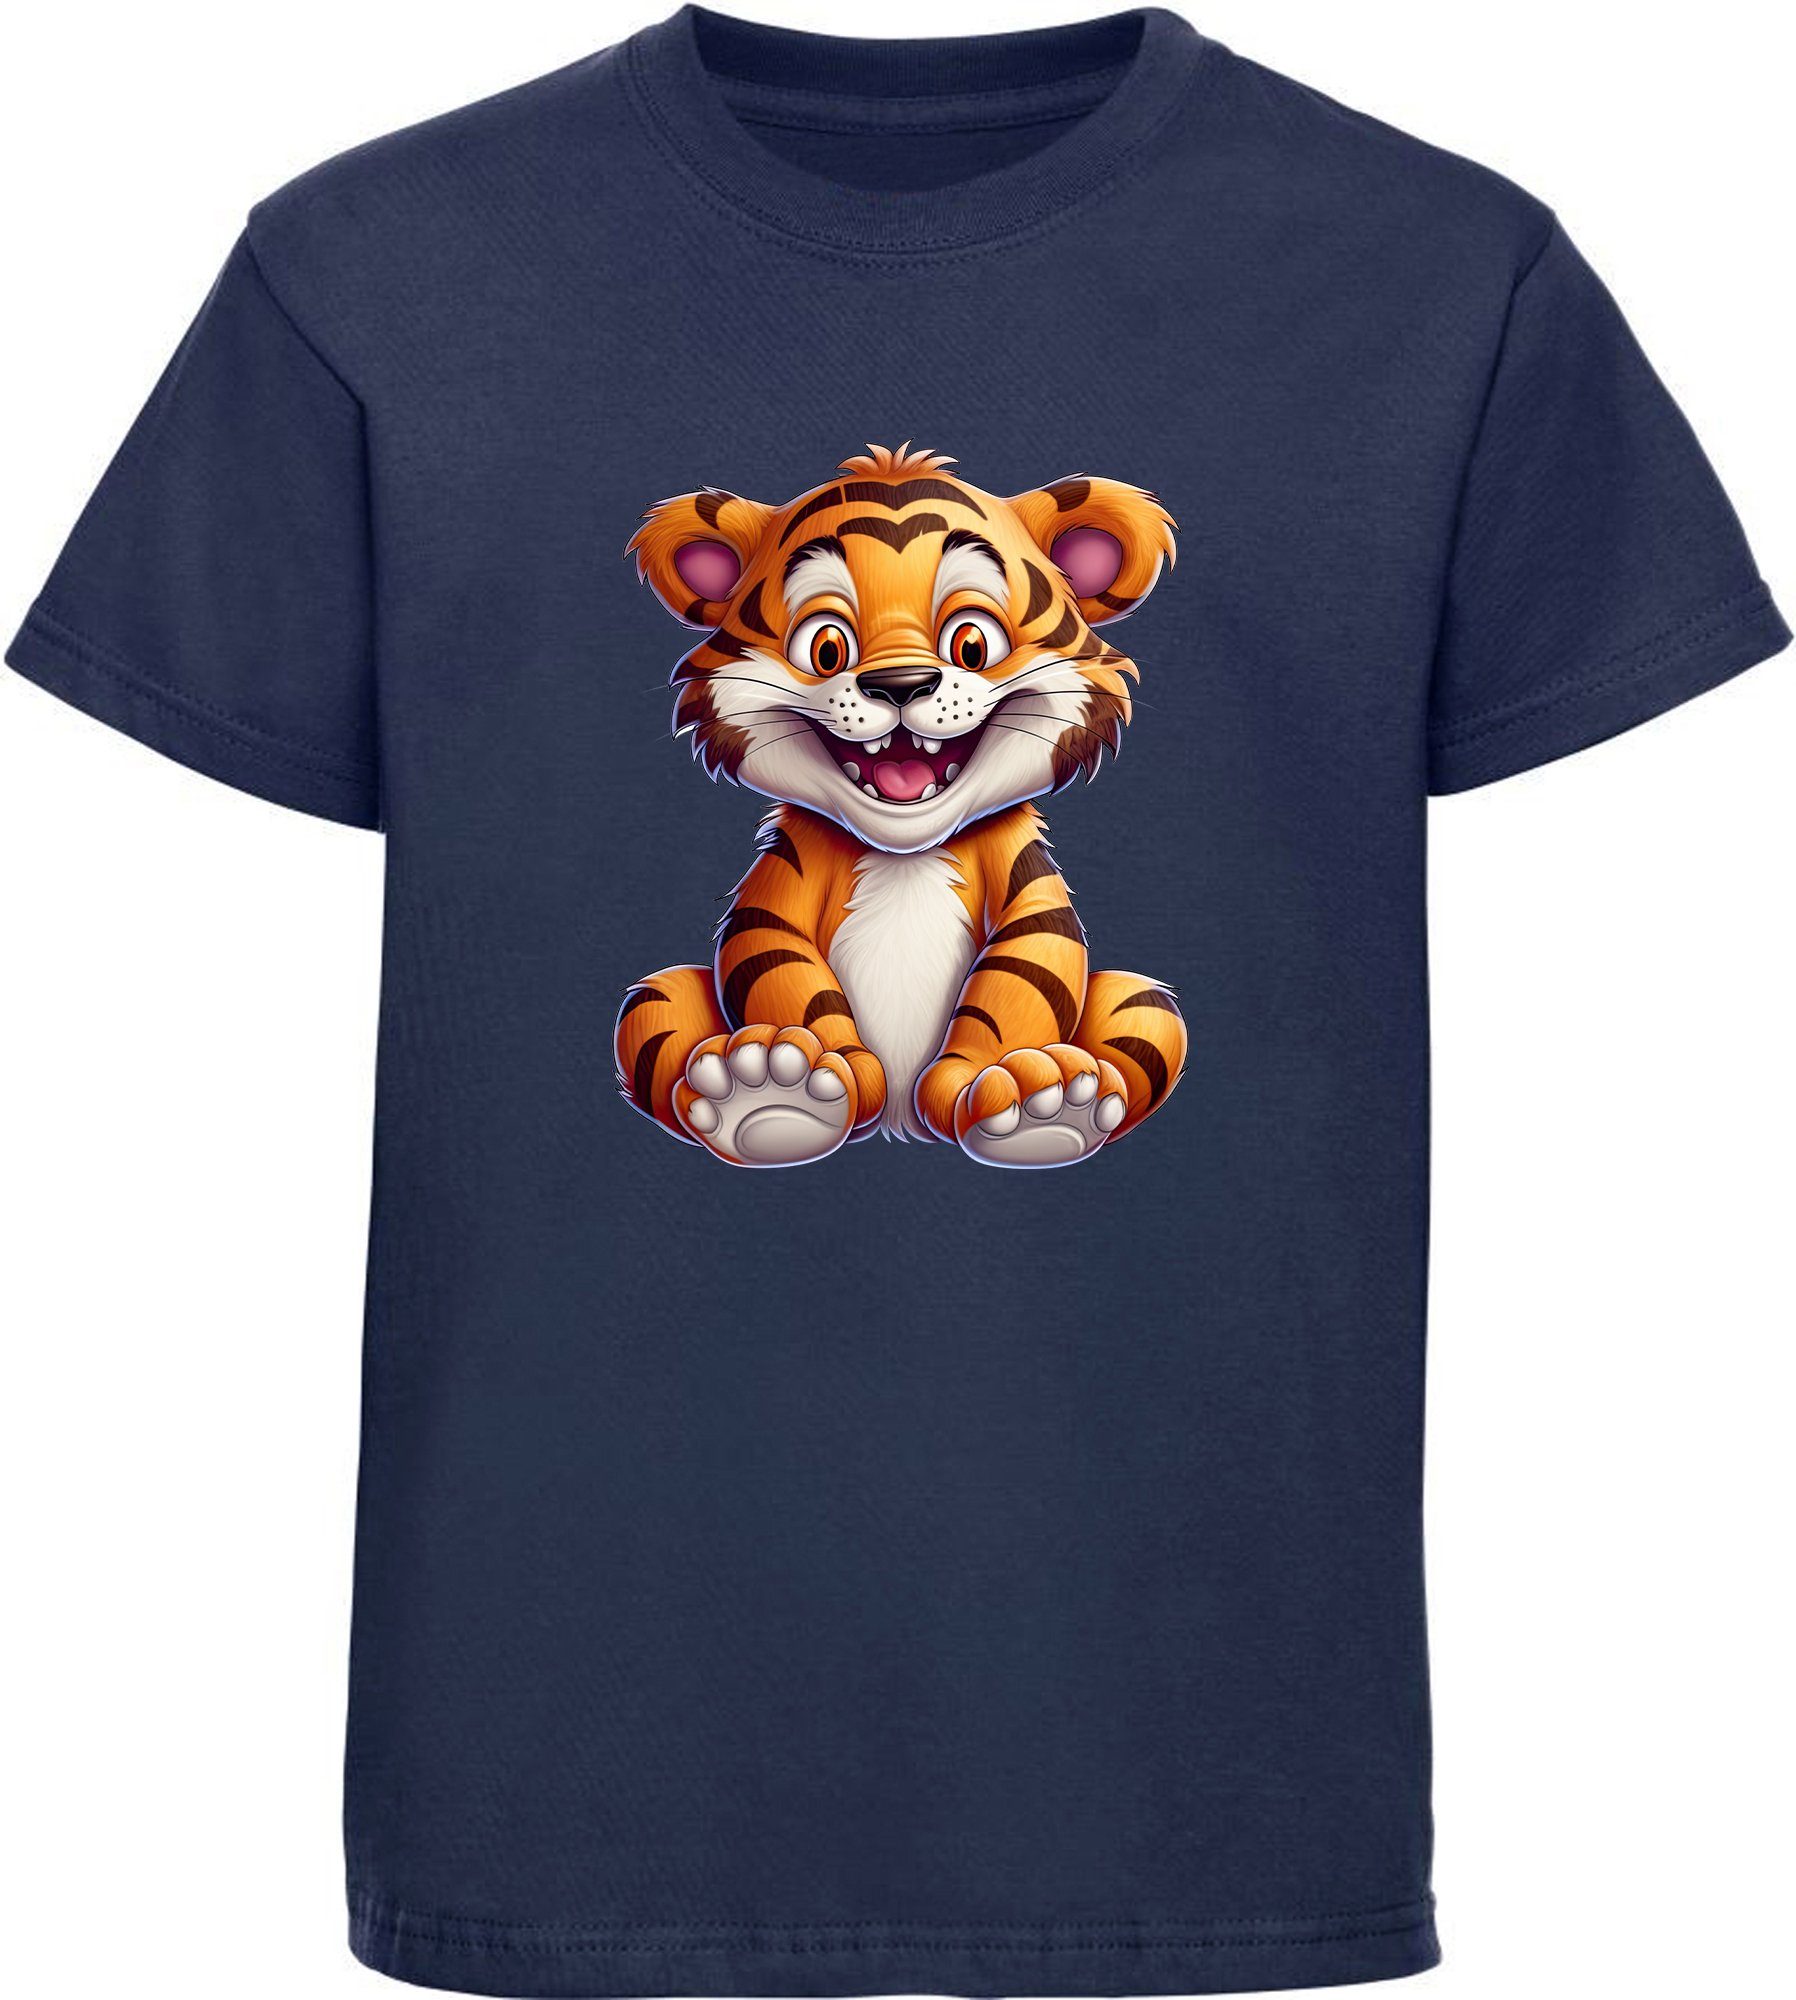 MyDesign24 T-Shirt Kinder Wildtier Print Shirt bedruckt - Baby Tiger Baumwollshirt mit Aufdruck, i278 navy blau